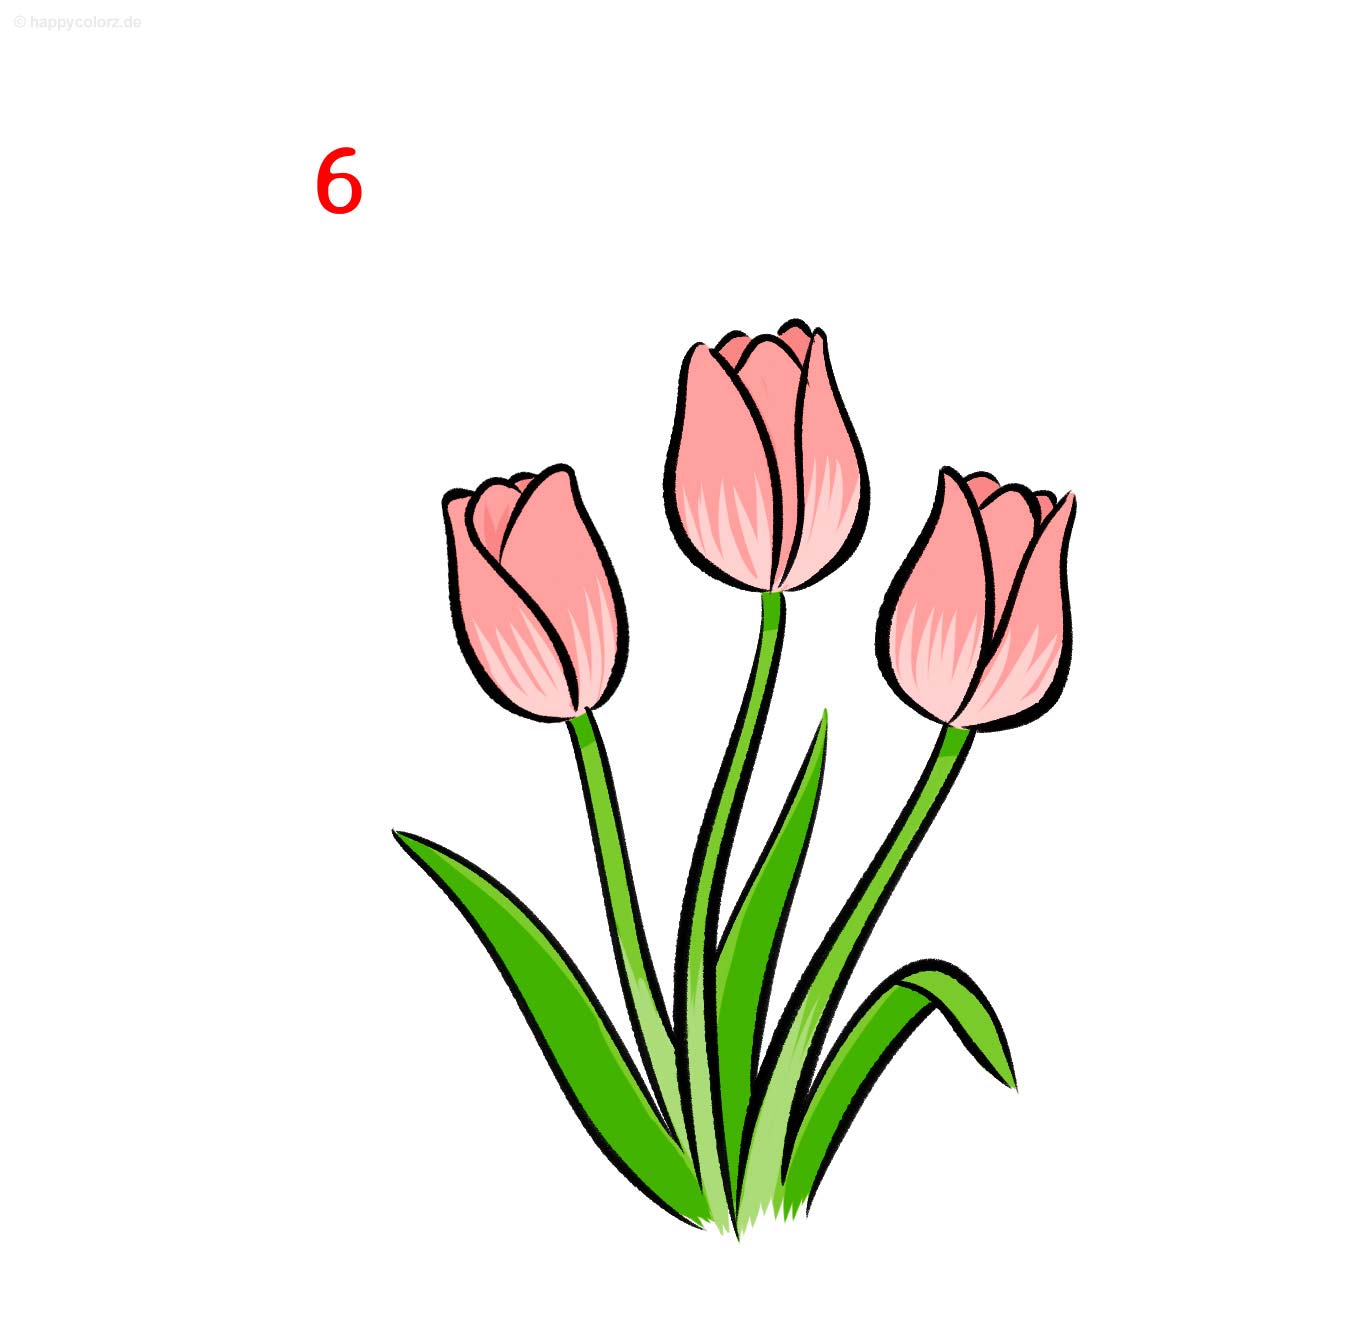 Tulpe zeichnen - Schritt für Schritt